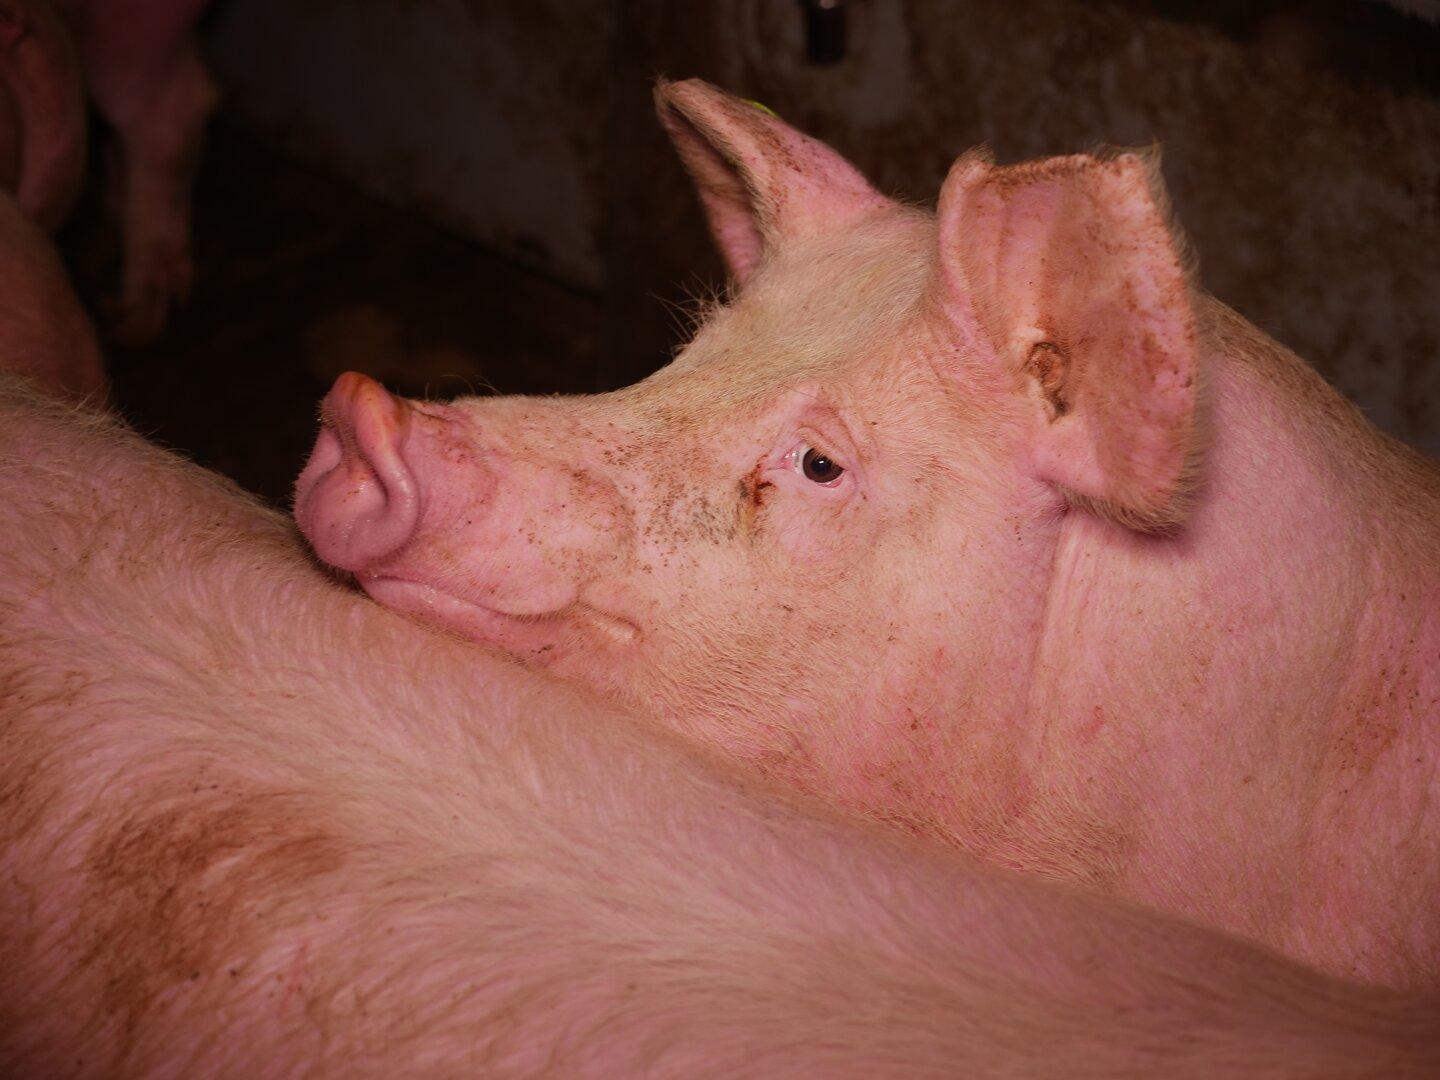 Verdacht der Tierquälerei in steirischem Schweinemastbetrieb